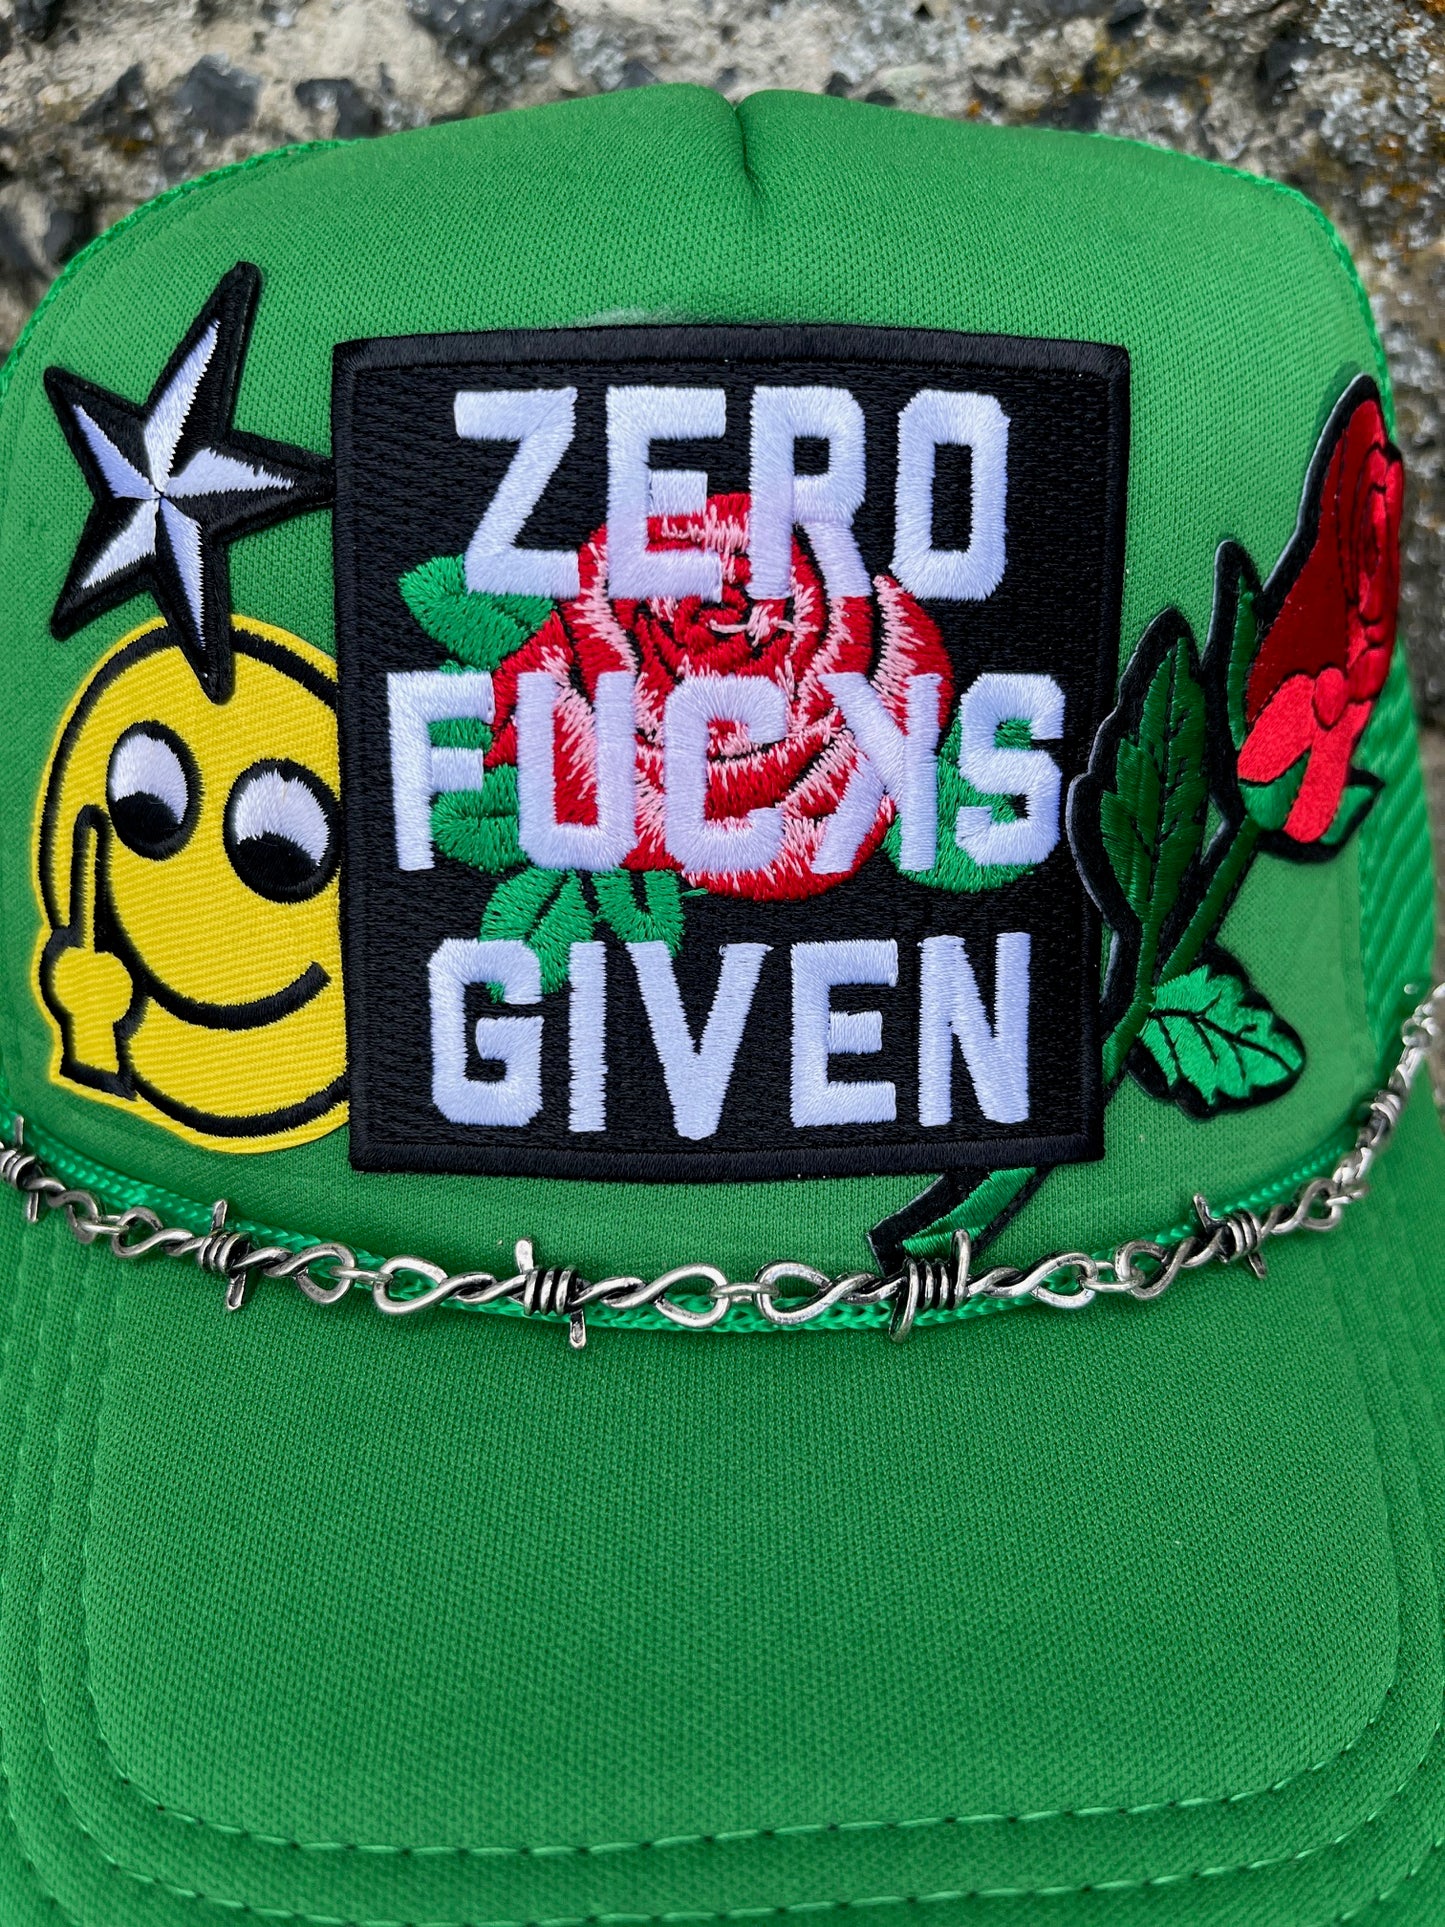 Trucker Hat - Zero F**Ks Given